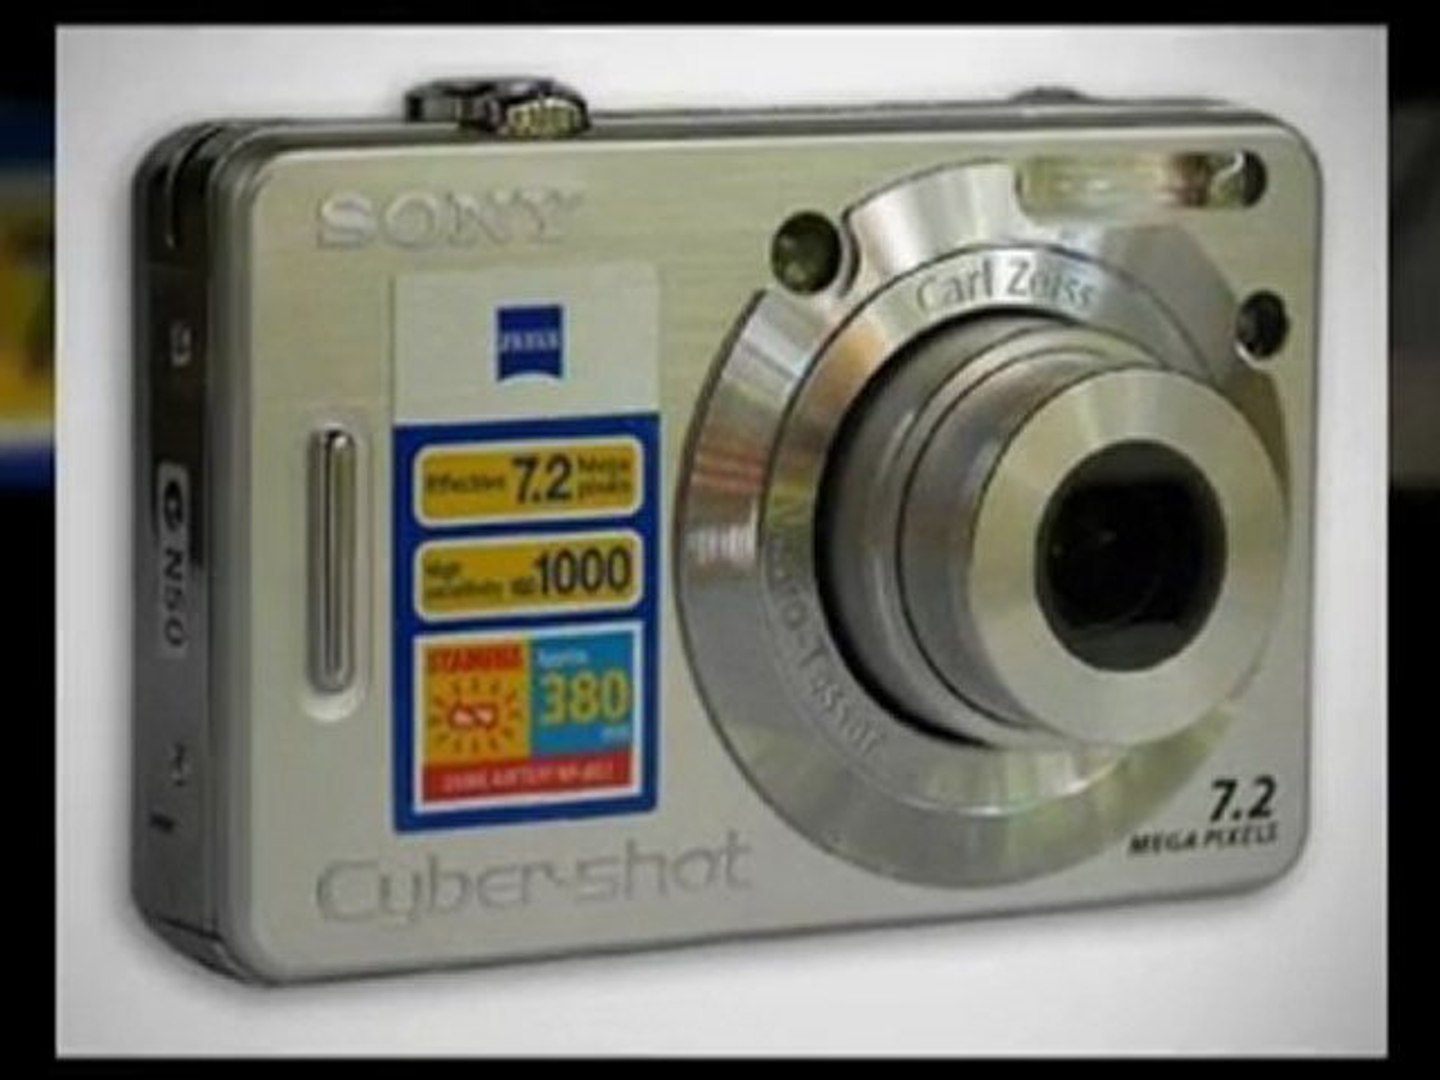 Sony Cybershot DSCW55 7.2MP Digital Camera with 3x ... - video Dailymotion